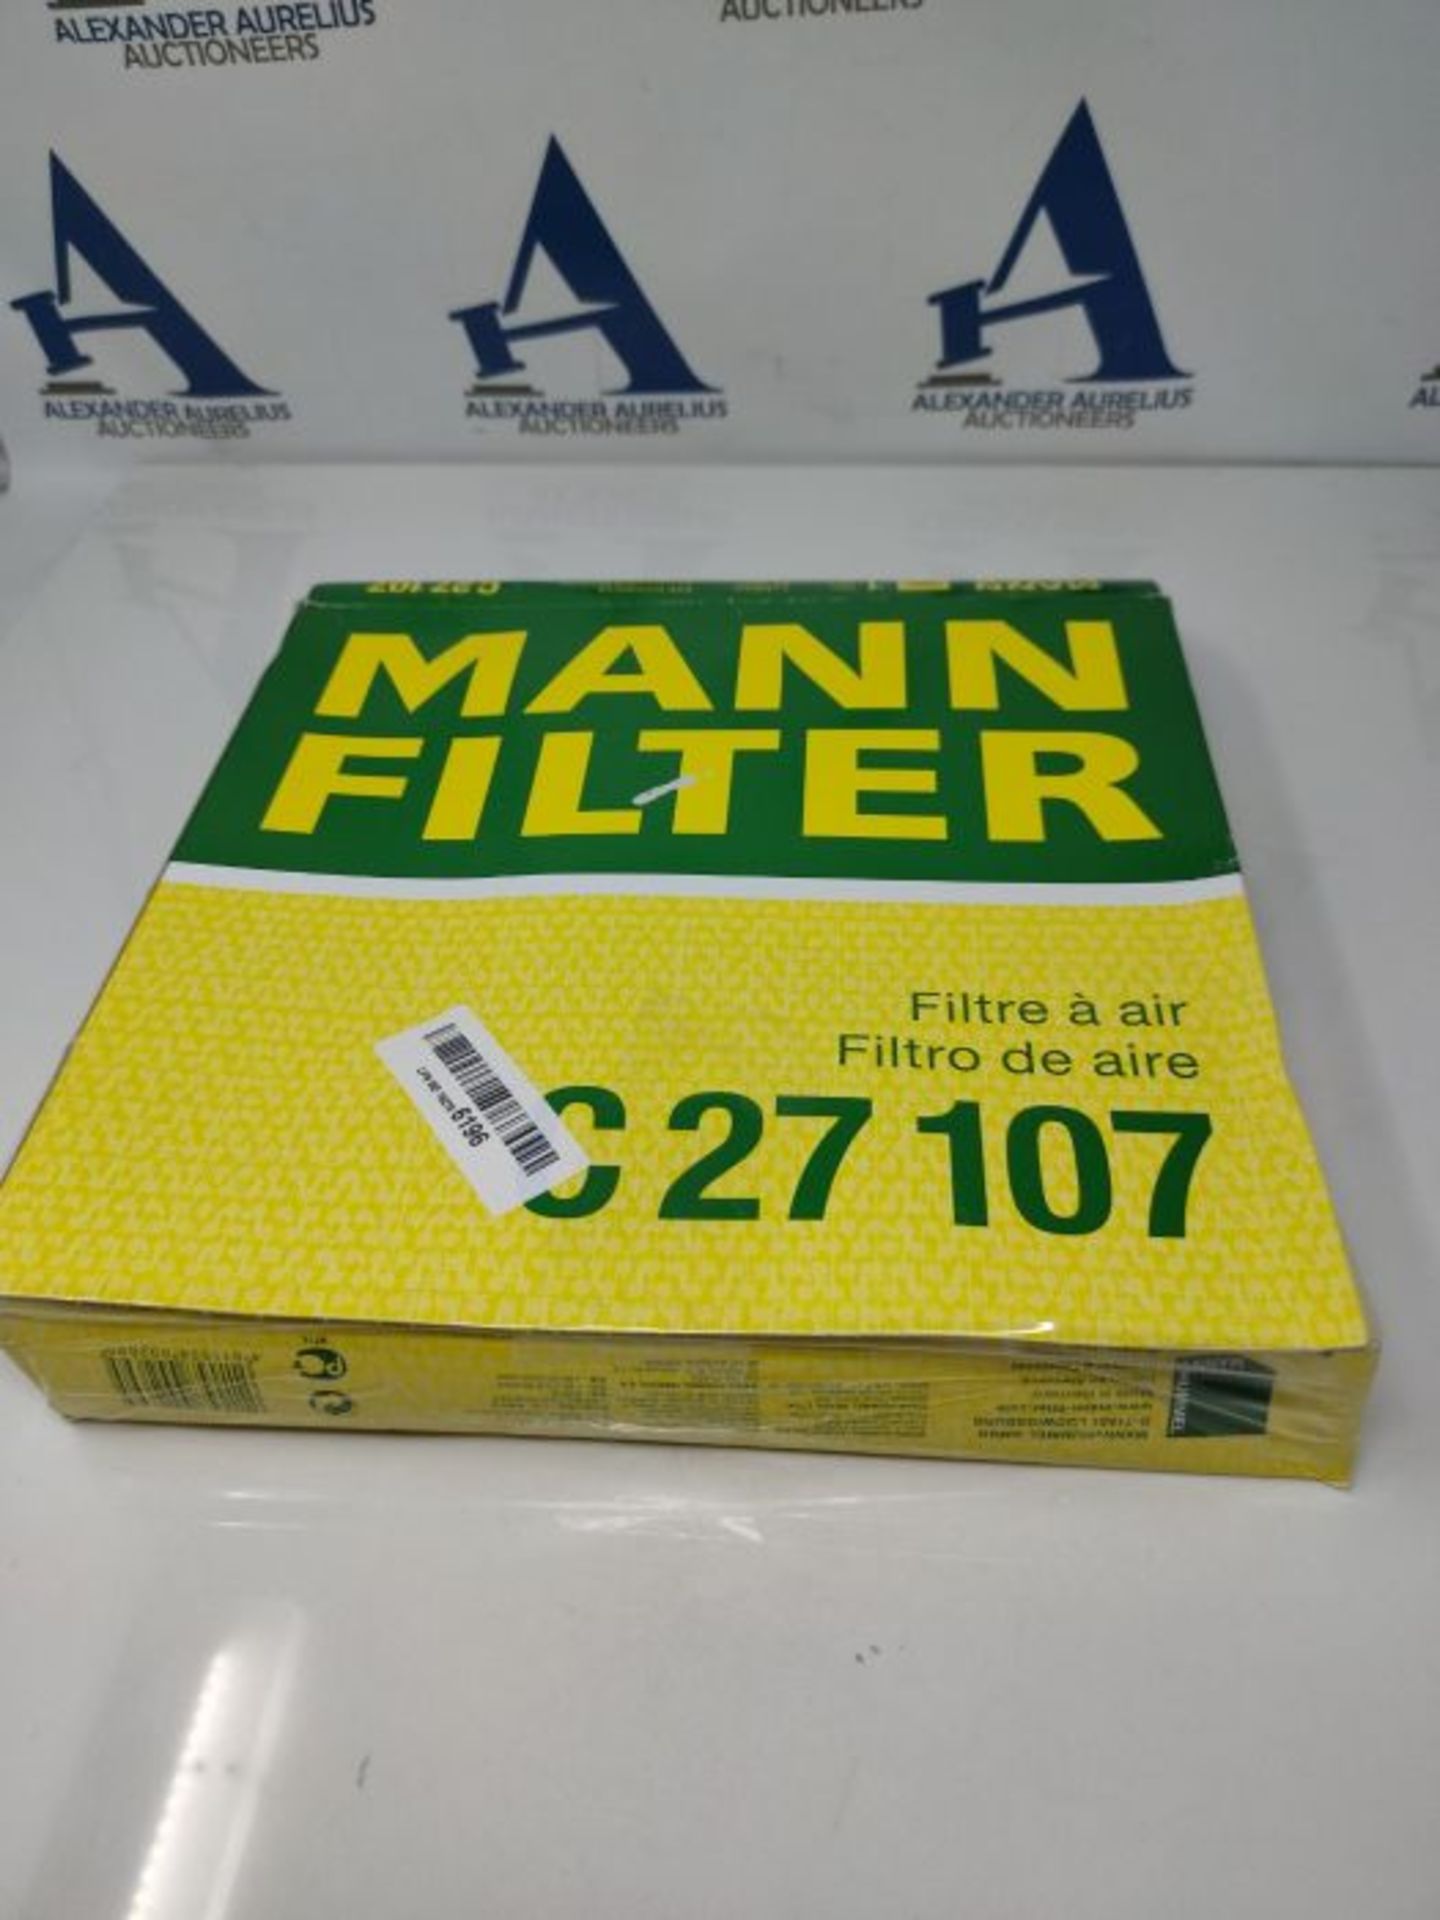 MANN-FILTER C 27 107 Air Filter  For Passenger Cars - Image 2 of 6